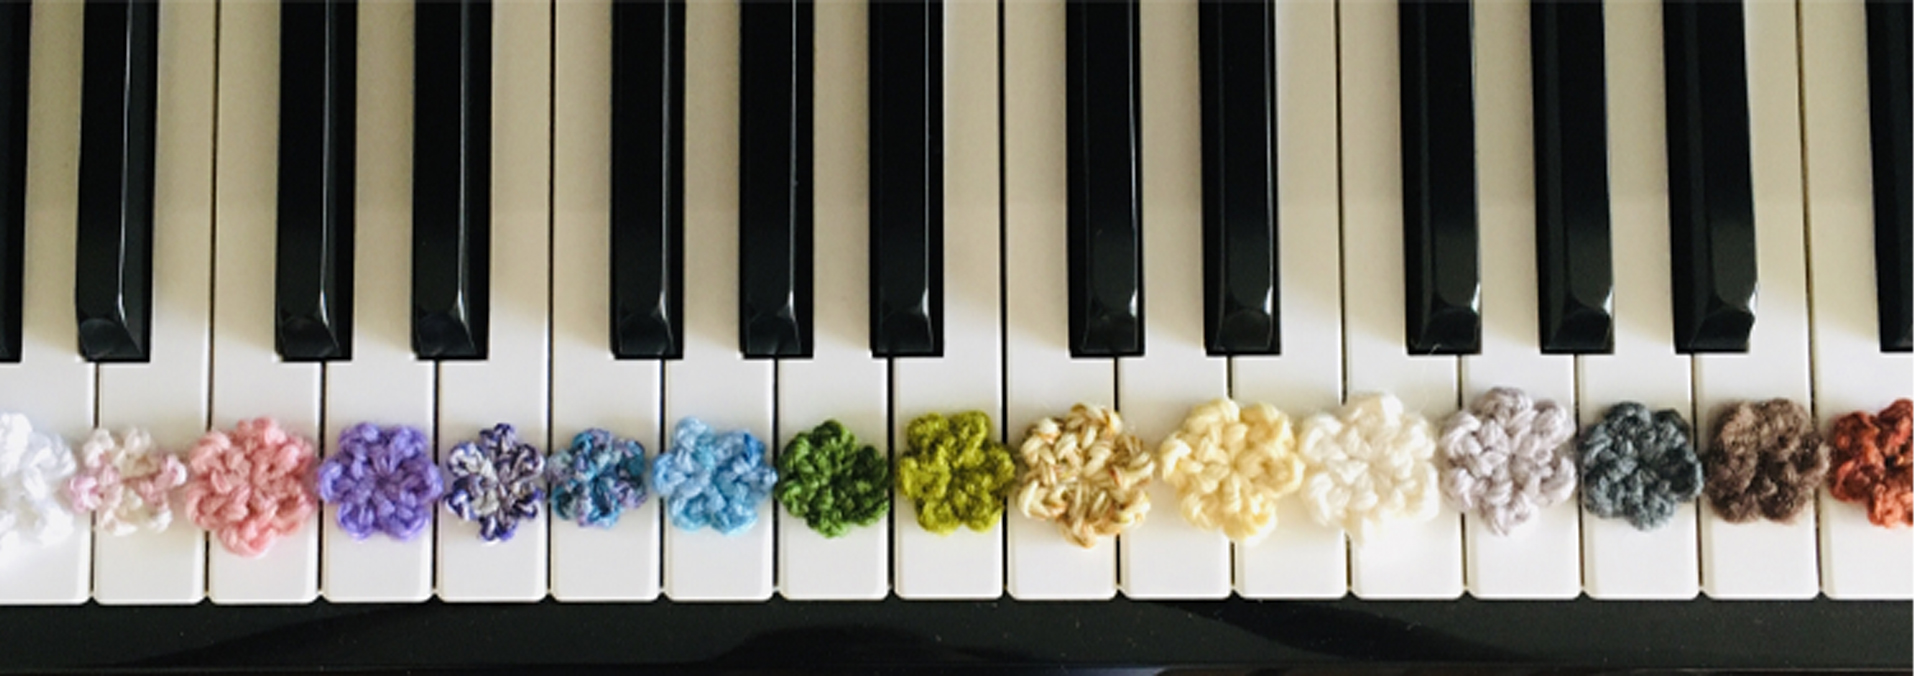 ピアノの鍵盤の画像です。